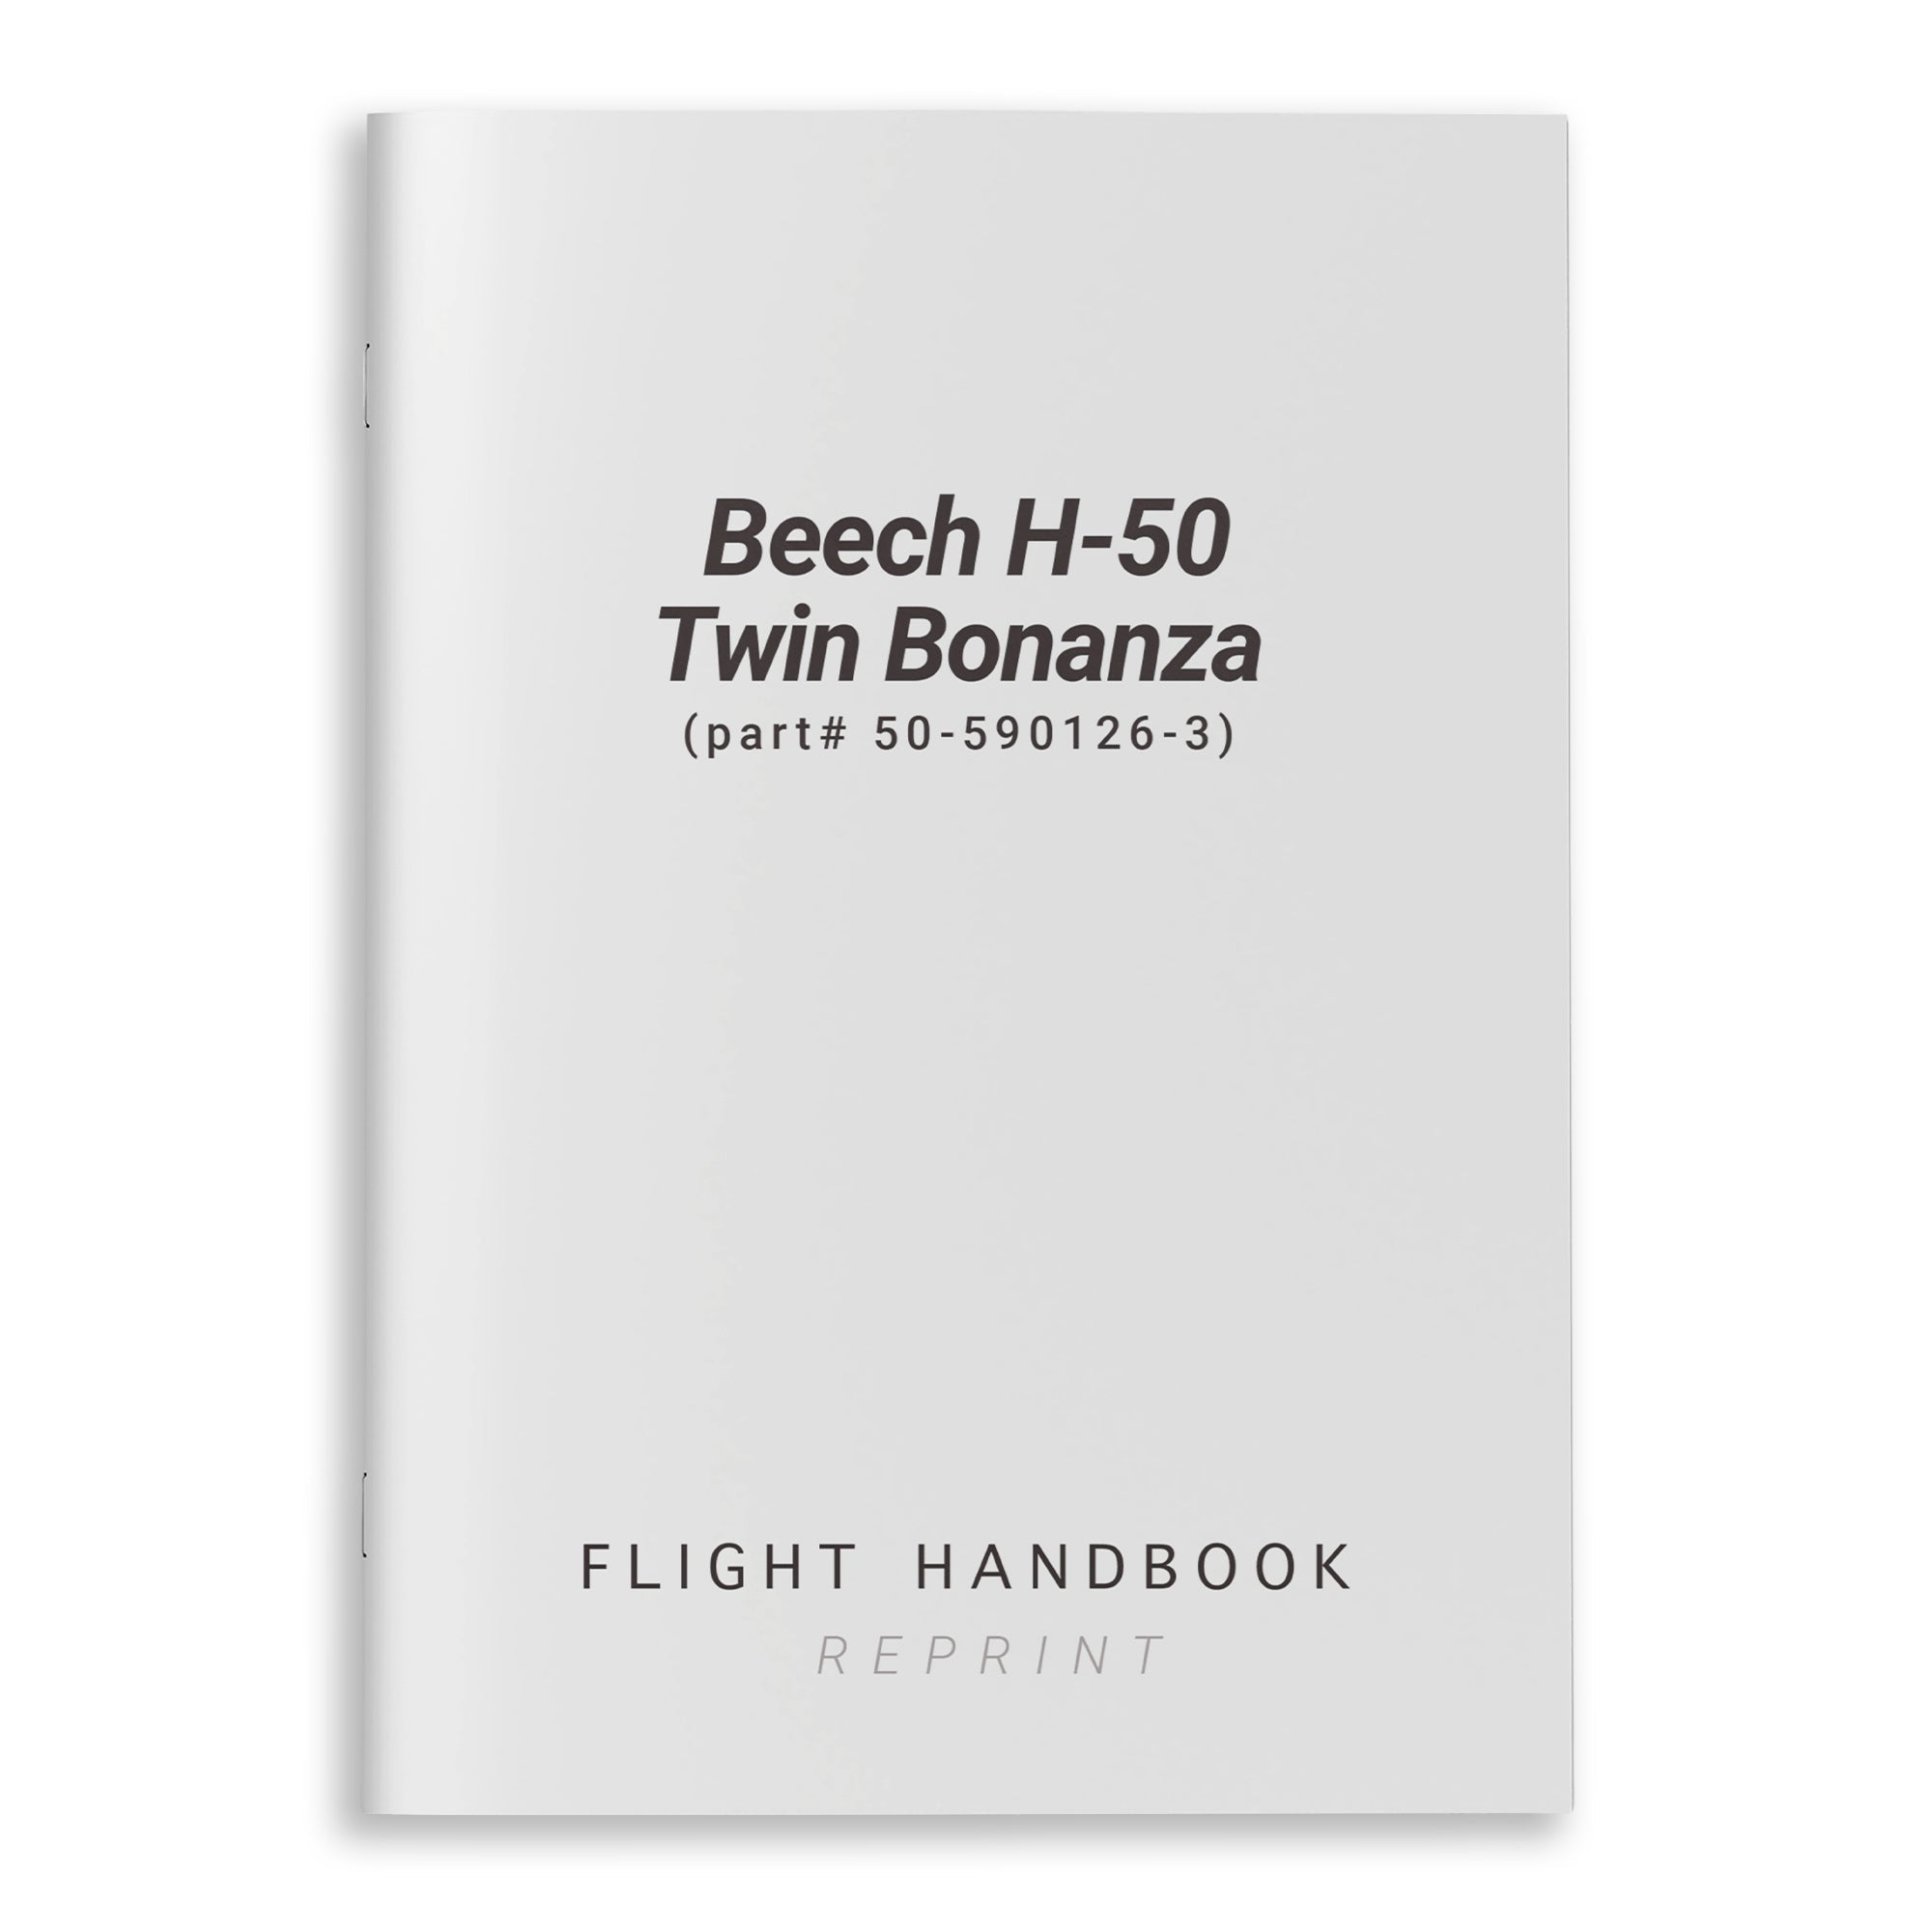 Beech H-50 Twin Bonanza Flight Handbook (part# 50-590126-3) - PilotMall.com